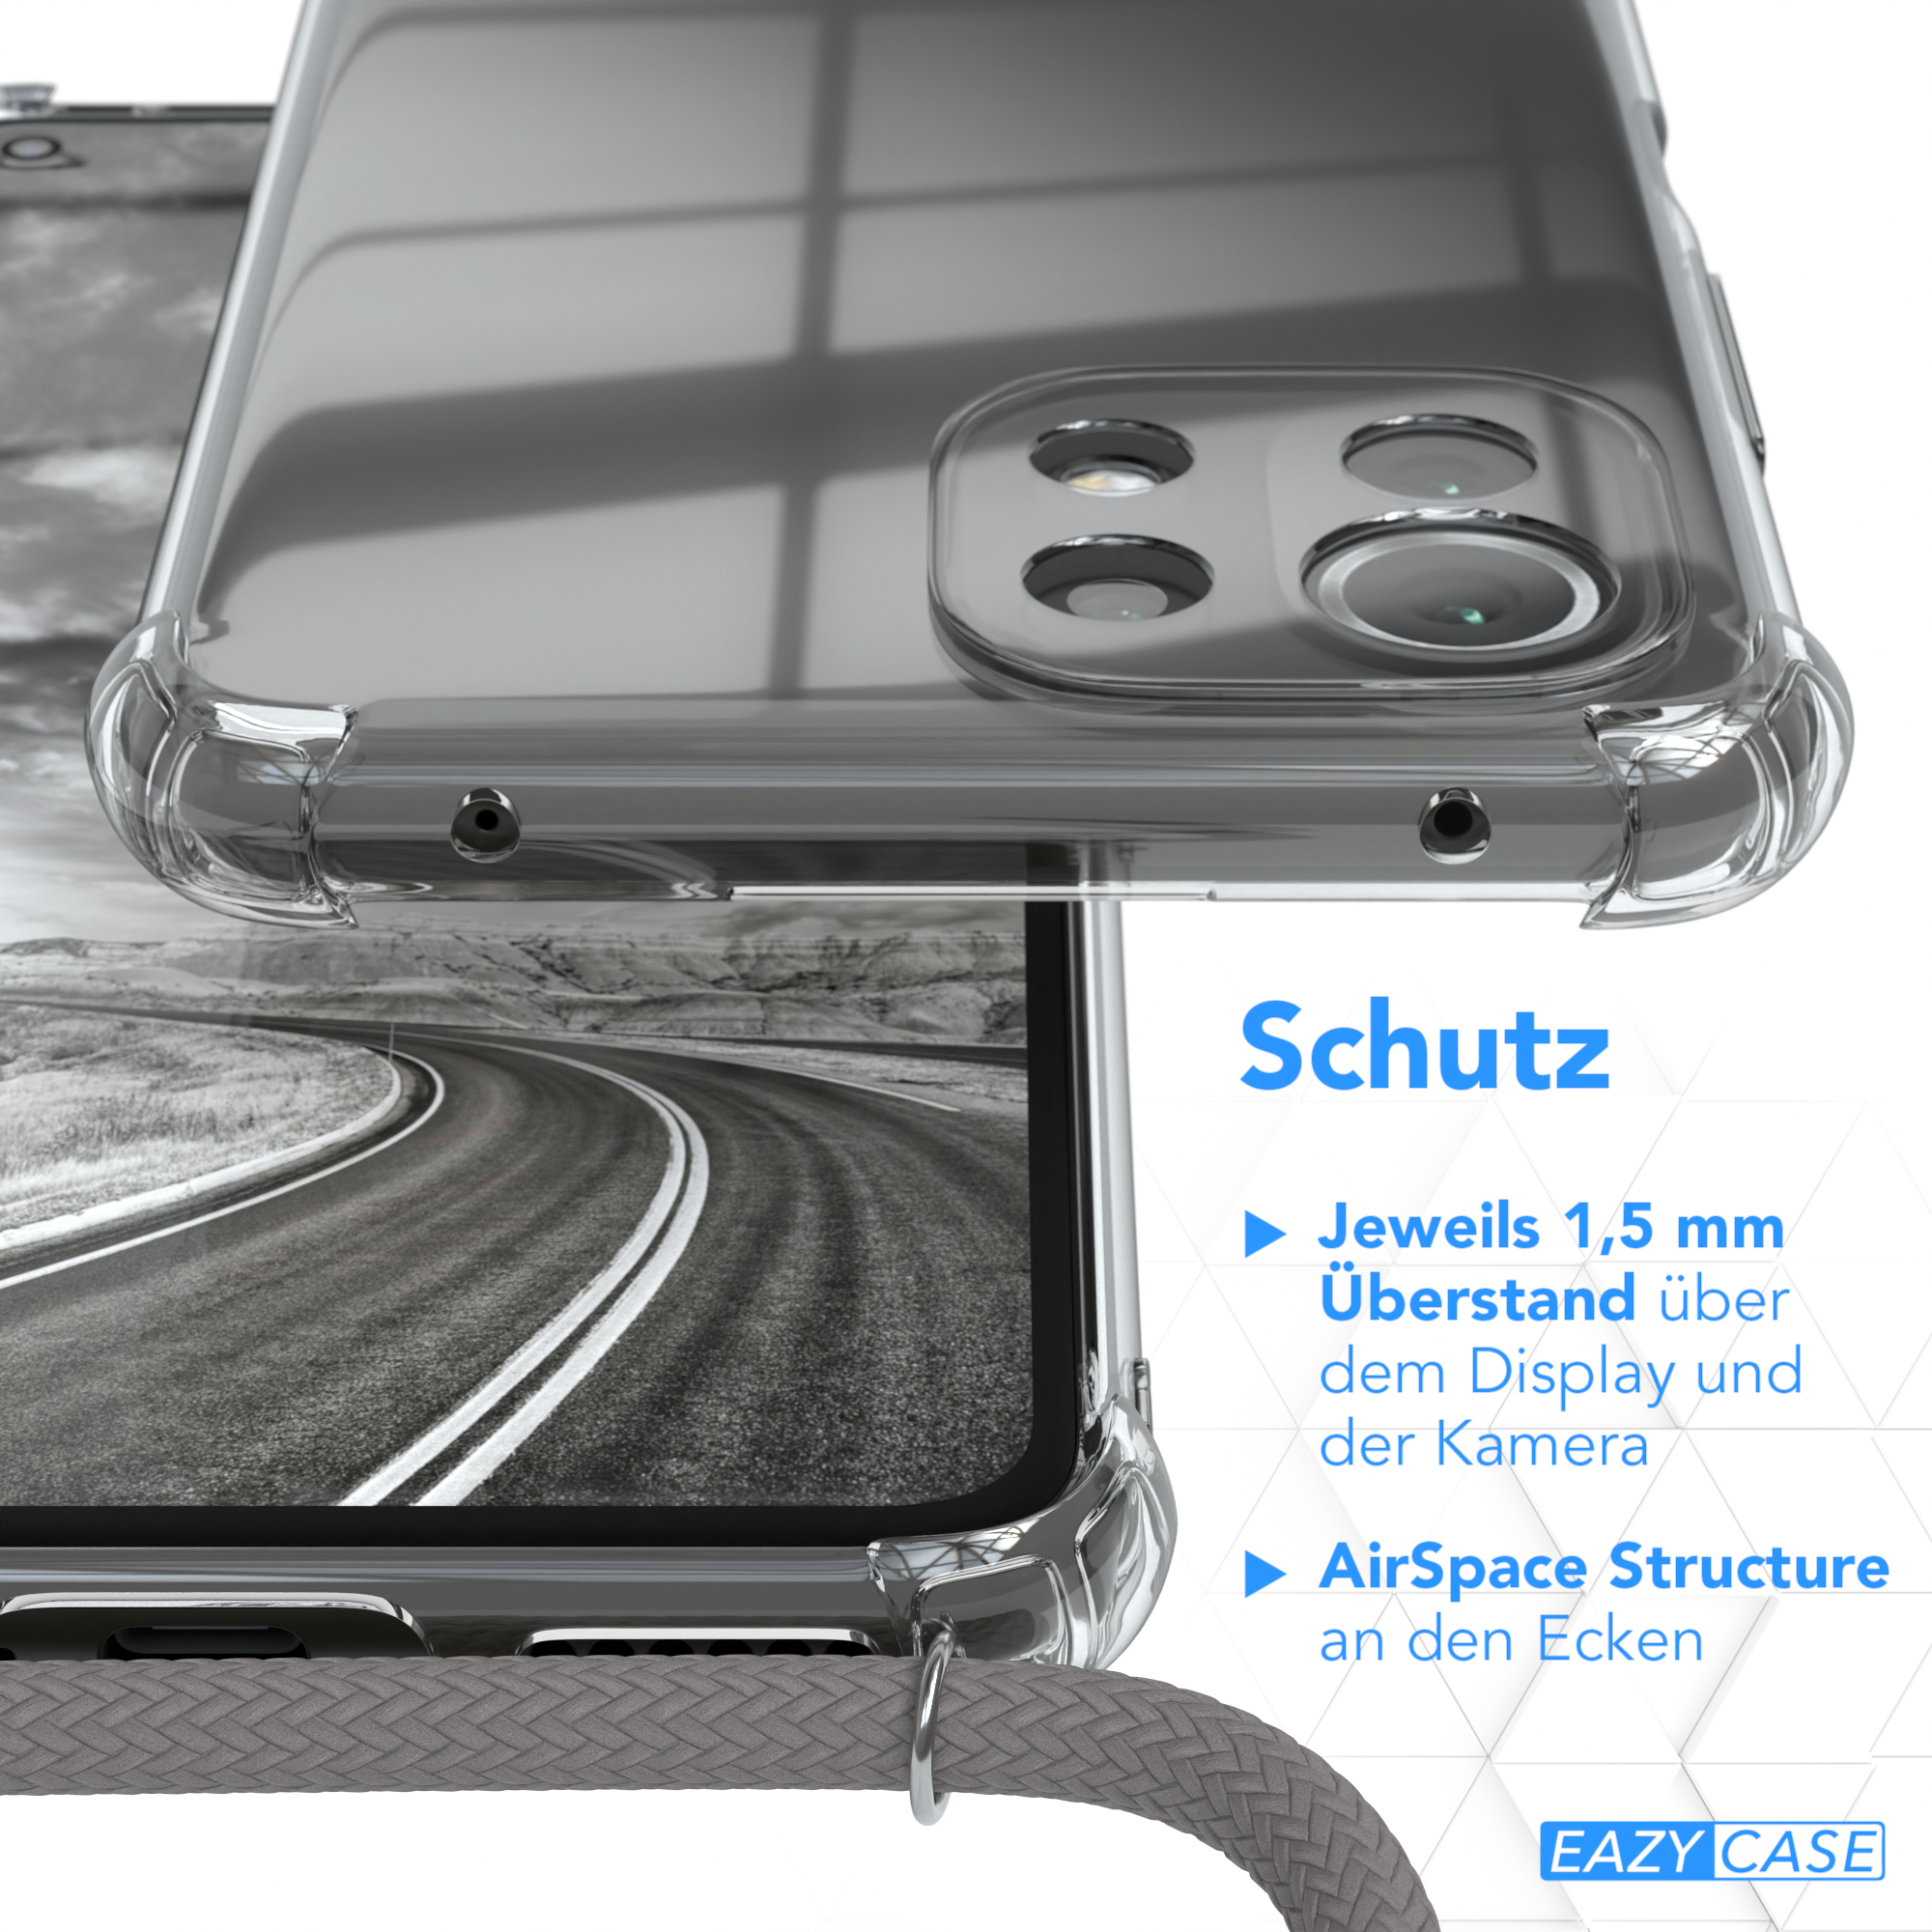 EAZY CASE Umhängetasche, Silber / Umhängeband, 5G Clear 5G Lite Cover mit Xiaomi, 11 / Lite 11 Mi Clips / NE, Grau